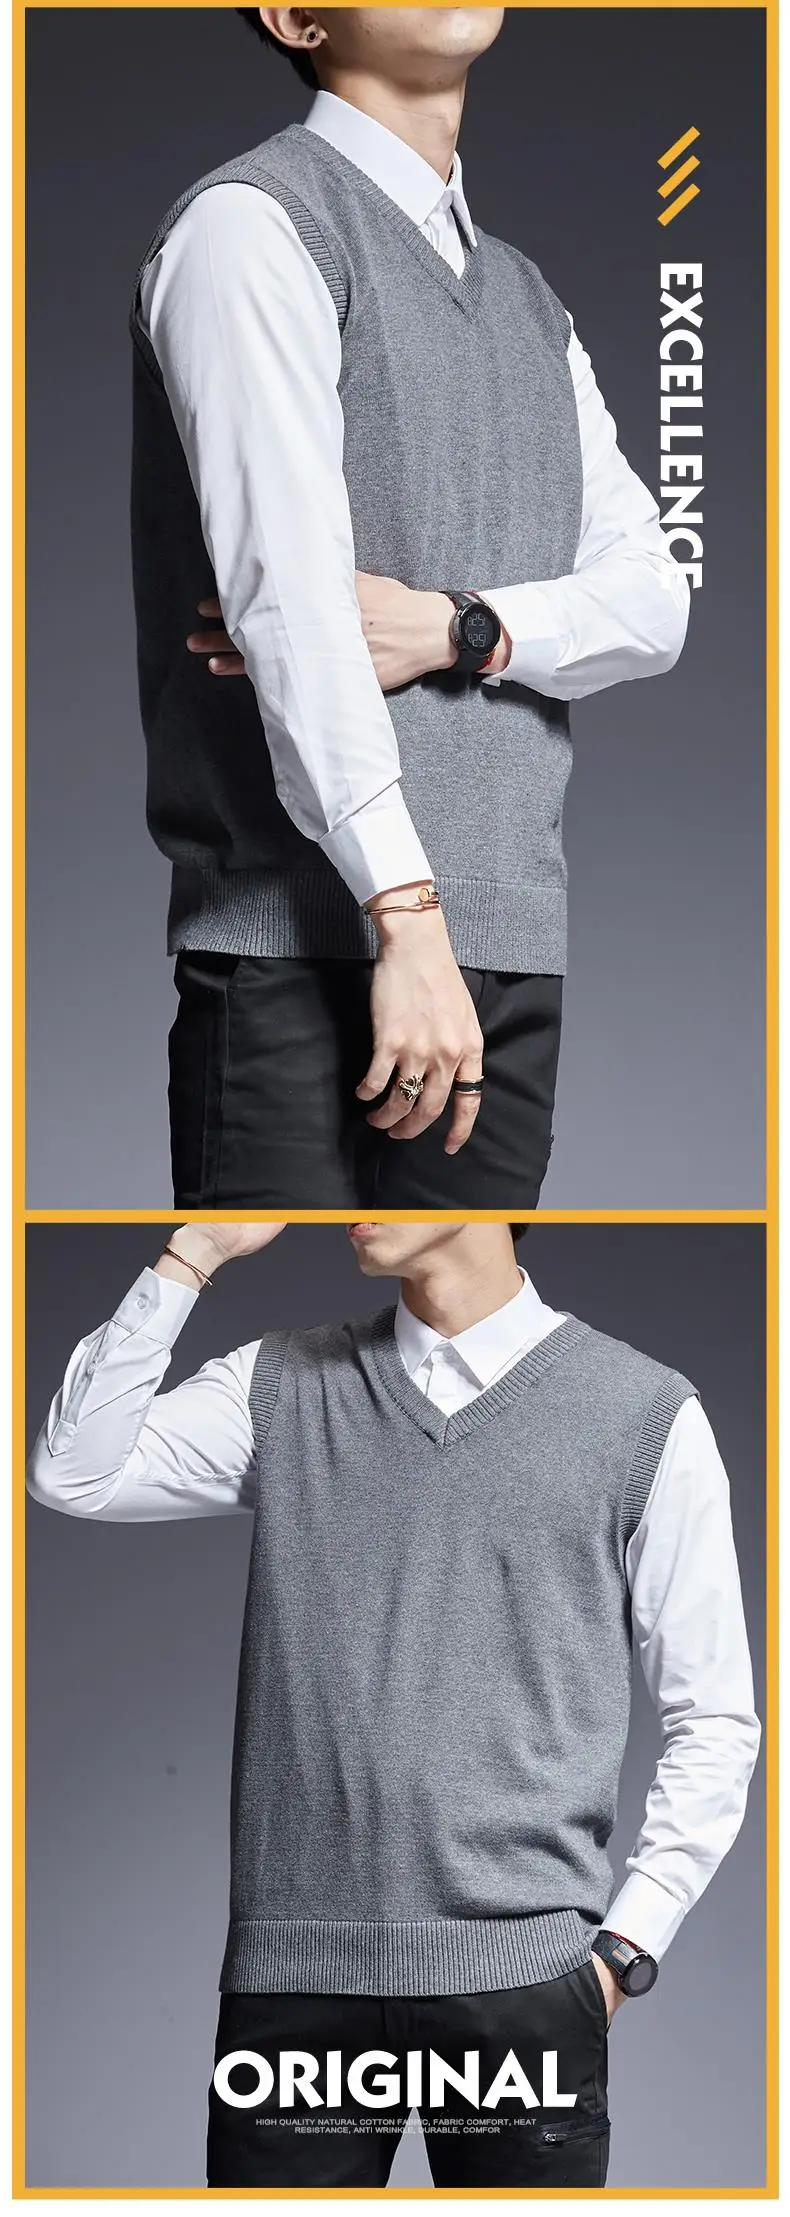 2019 новый модный брендовый свитер для мужчин s пуловеры Sleeveles Slim Fit Джемперы трикотажные толстые Осенние корейский стиль повседневная